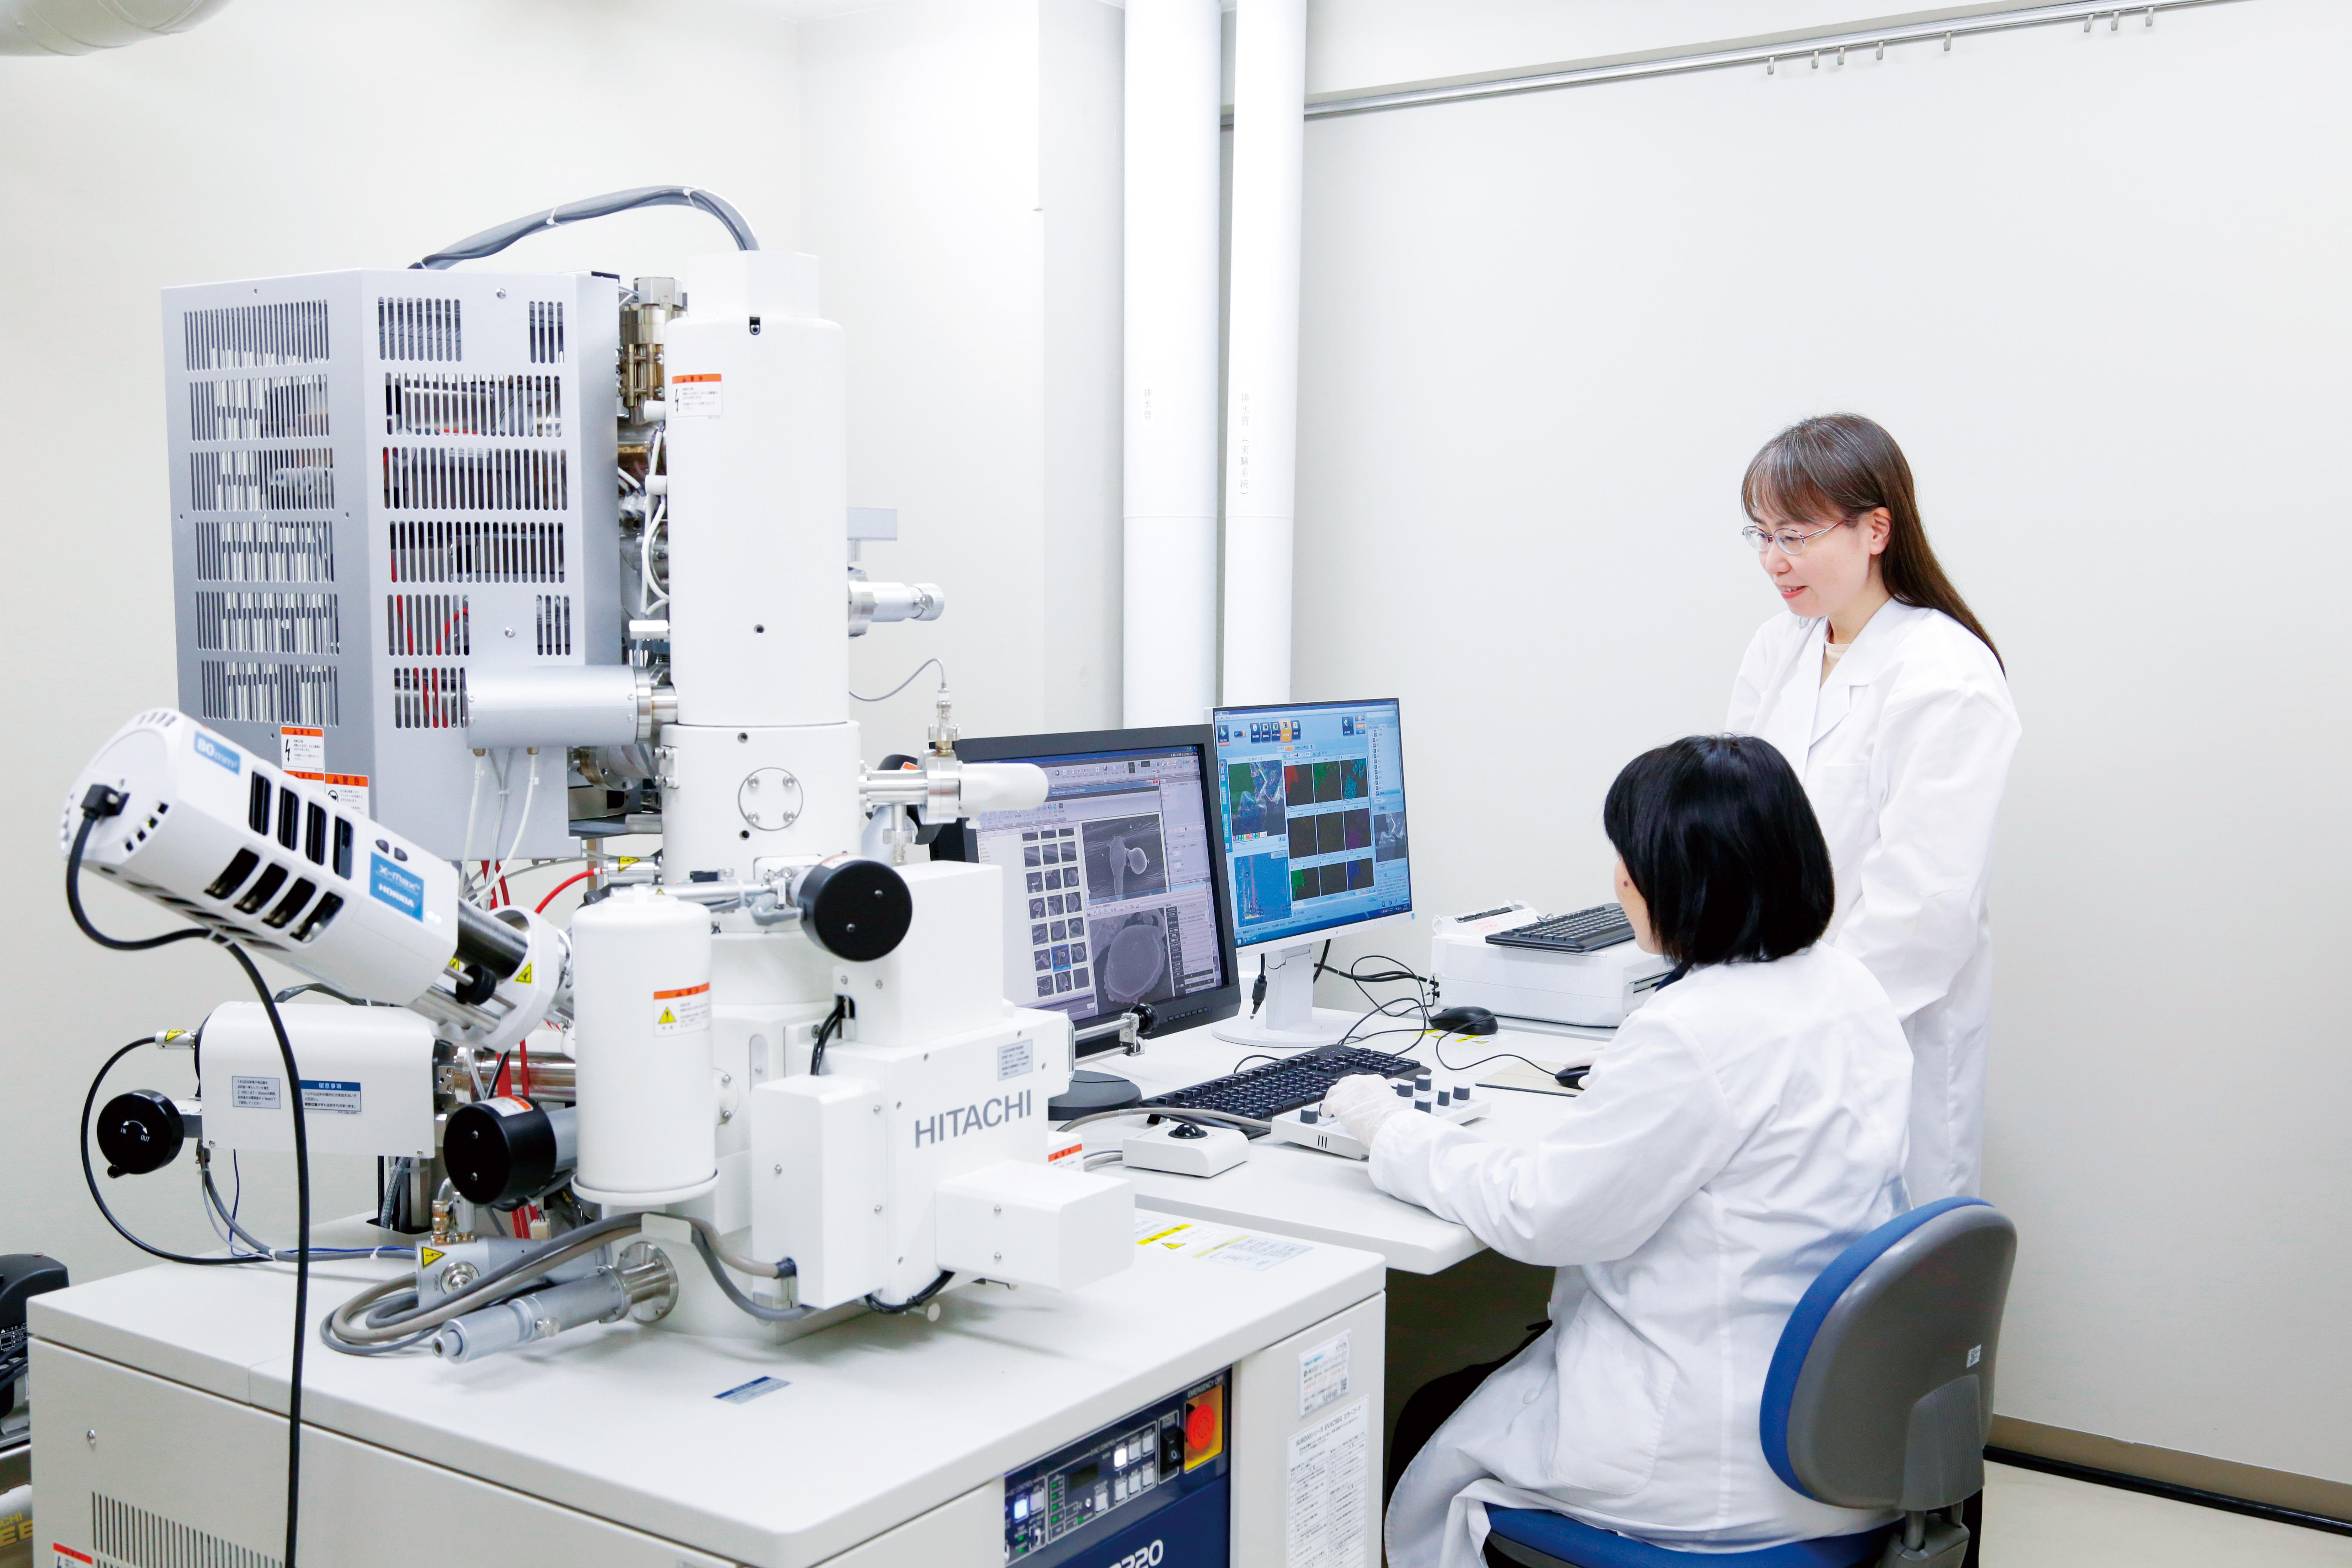 日本女子大学理学部が理化学研究所 環境資源科学研究センターと相互の研究推進のための連携・協力に関する協定を締結 -- 電子顕微鏡等によるバイオイメージングに関連する研究分野でのイノベーション創出を目指す --